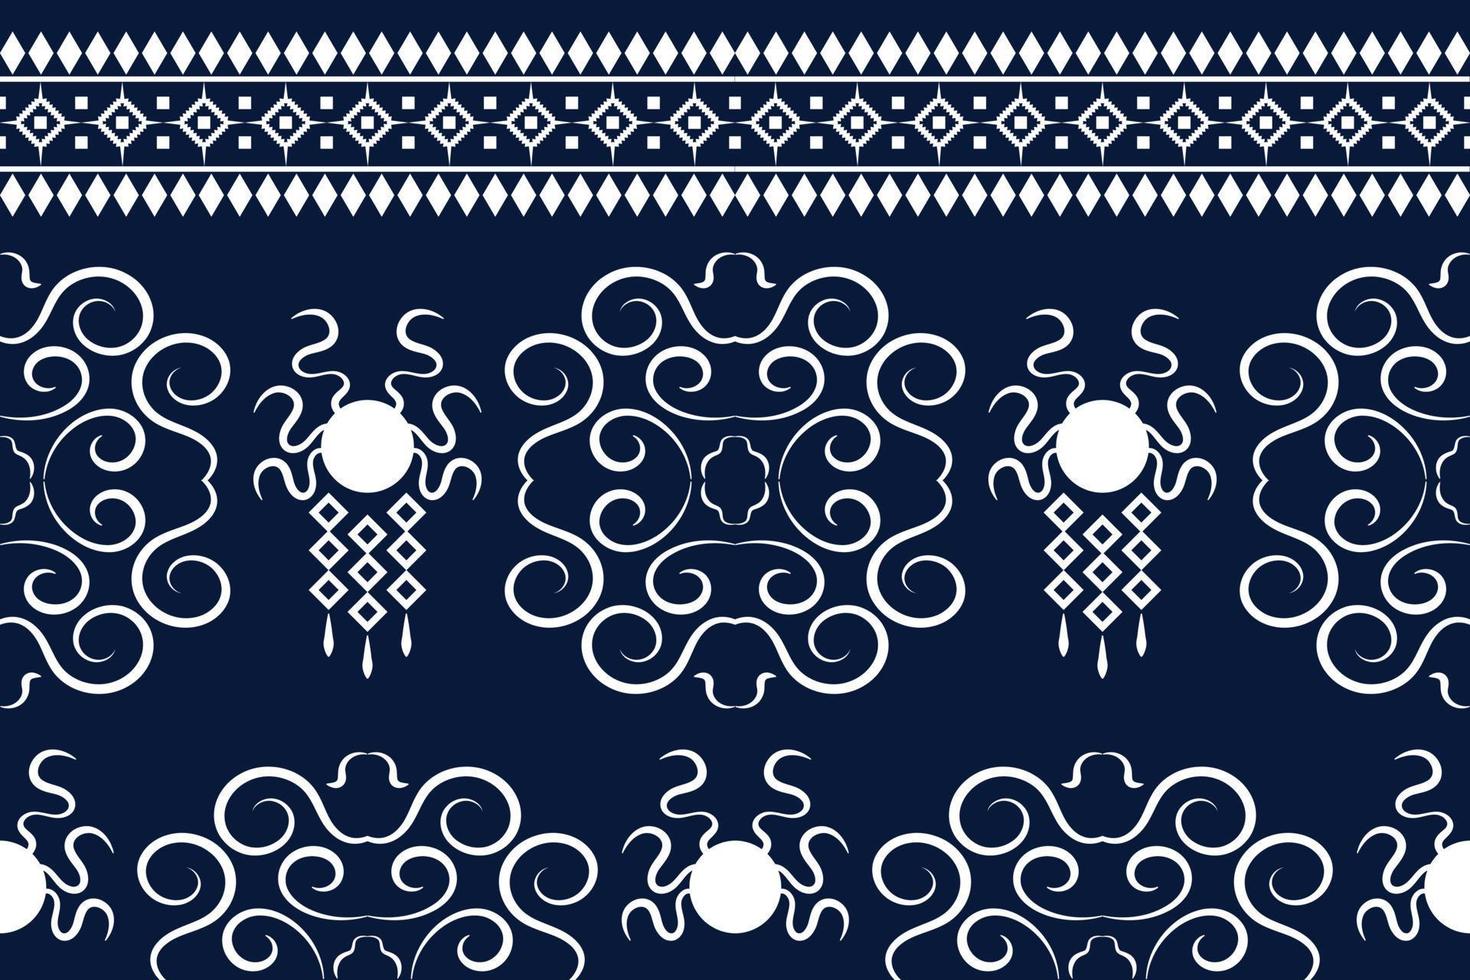 etnisch kleding stof patroon meetkundig stijl. sarong aztec etnisch oosters patroon traditioneel donker marine blauw achtergrond. abstract,vector,illustratie. gebruik voor textuur,kleding,verpakking,decoratie,tapijt. vector